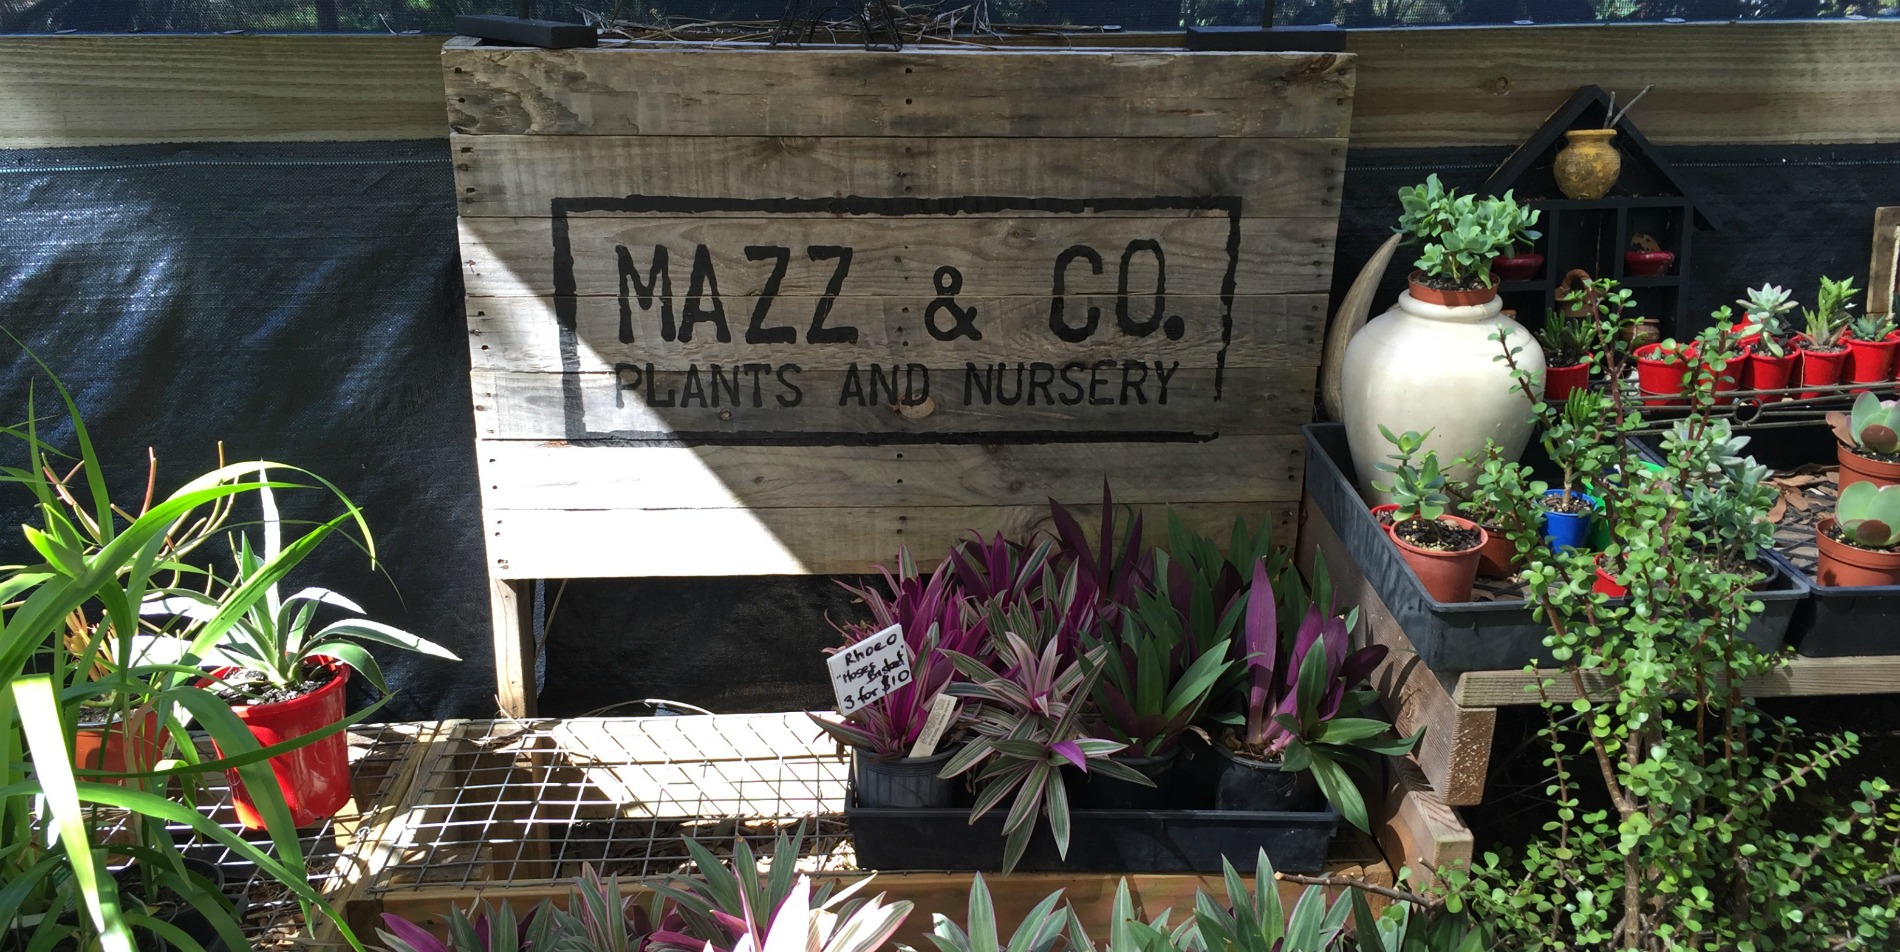 Mazz & Co nursery